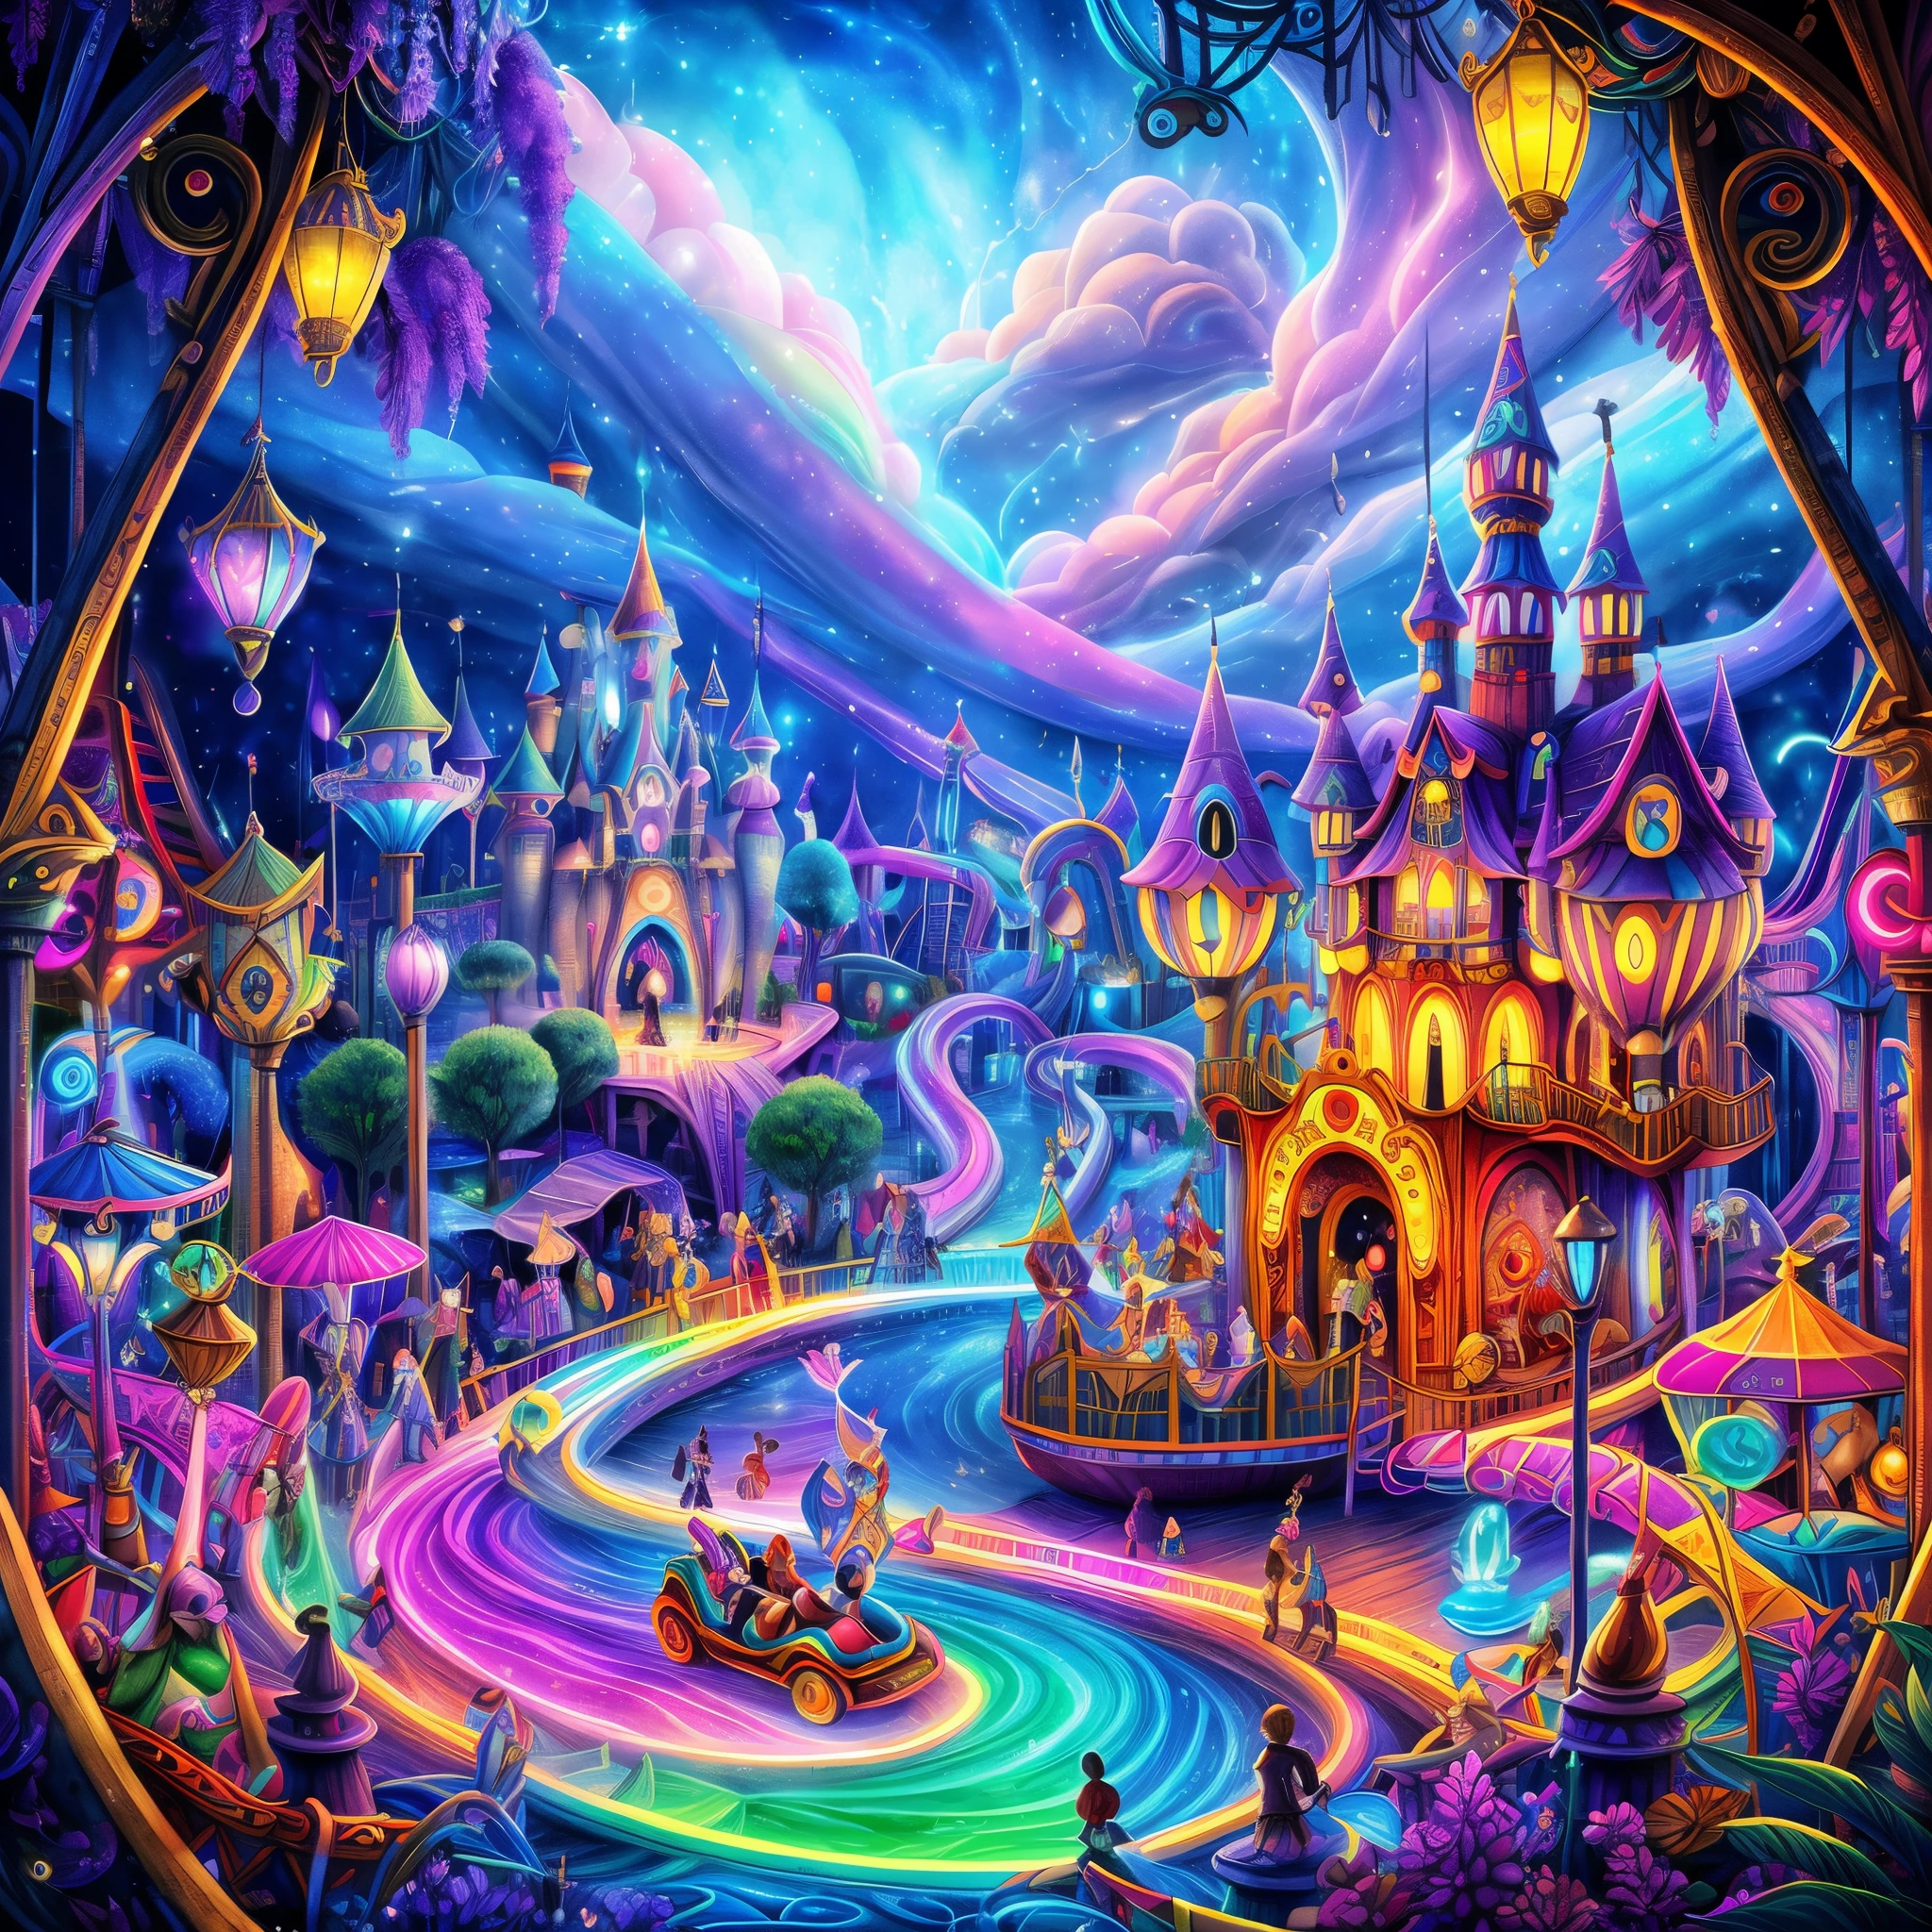 (meilleure qualité, 8k, Une haute résolution, chef-d&#39;œuvre:1.2), ultra - détaillé, (réel, de façon réaliste:1.37), couleur vive, ambiance magique, capricieux, ((parc à thème des pirates Disney, pirates des Caraïbes，fontaine et carrousel, Parc animé de la ville des pirates, Belles couleurs néon féeriques, Parc à thème Medieval Fantasy Town, Couleurs et atmosphère néon magiques, point culminant magique de l&#39;art conceptuel, art conceptuel magique, style fantastique, fantaisie magique，Le contenu est très détaillé, parc à thème Disney, Couleurs et ambiance magiques, Un parc d&#39;attractions, montagnes russes, bateaux pirates, autos tamponneuses, la grande roue, parc aquatique)), surréaliste, psychédélique, Détails compliqués, Belle texture, éthéré, comme un rêve, Lumière douce et brillante, Des motifs charmants, Créatures fantastiques, Des surprises cachées, des paysages oniriques, surréaliste color palette, Aura mystique, Réalisme ultra-réaliste, voyage enchanteur, voyage psychédélique, imagination débordante, expérience immersive, créature mystérieuse, charme d&#39;un autre monde, chemins lumineux, Illuminez le parc à thème Magic, Ciel surréaliste, capricieux theme park, une rencontre magique,Des œuvres d&#39;art fascinantes